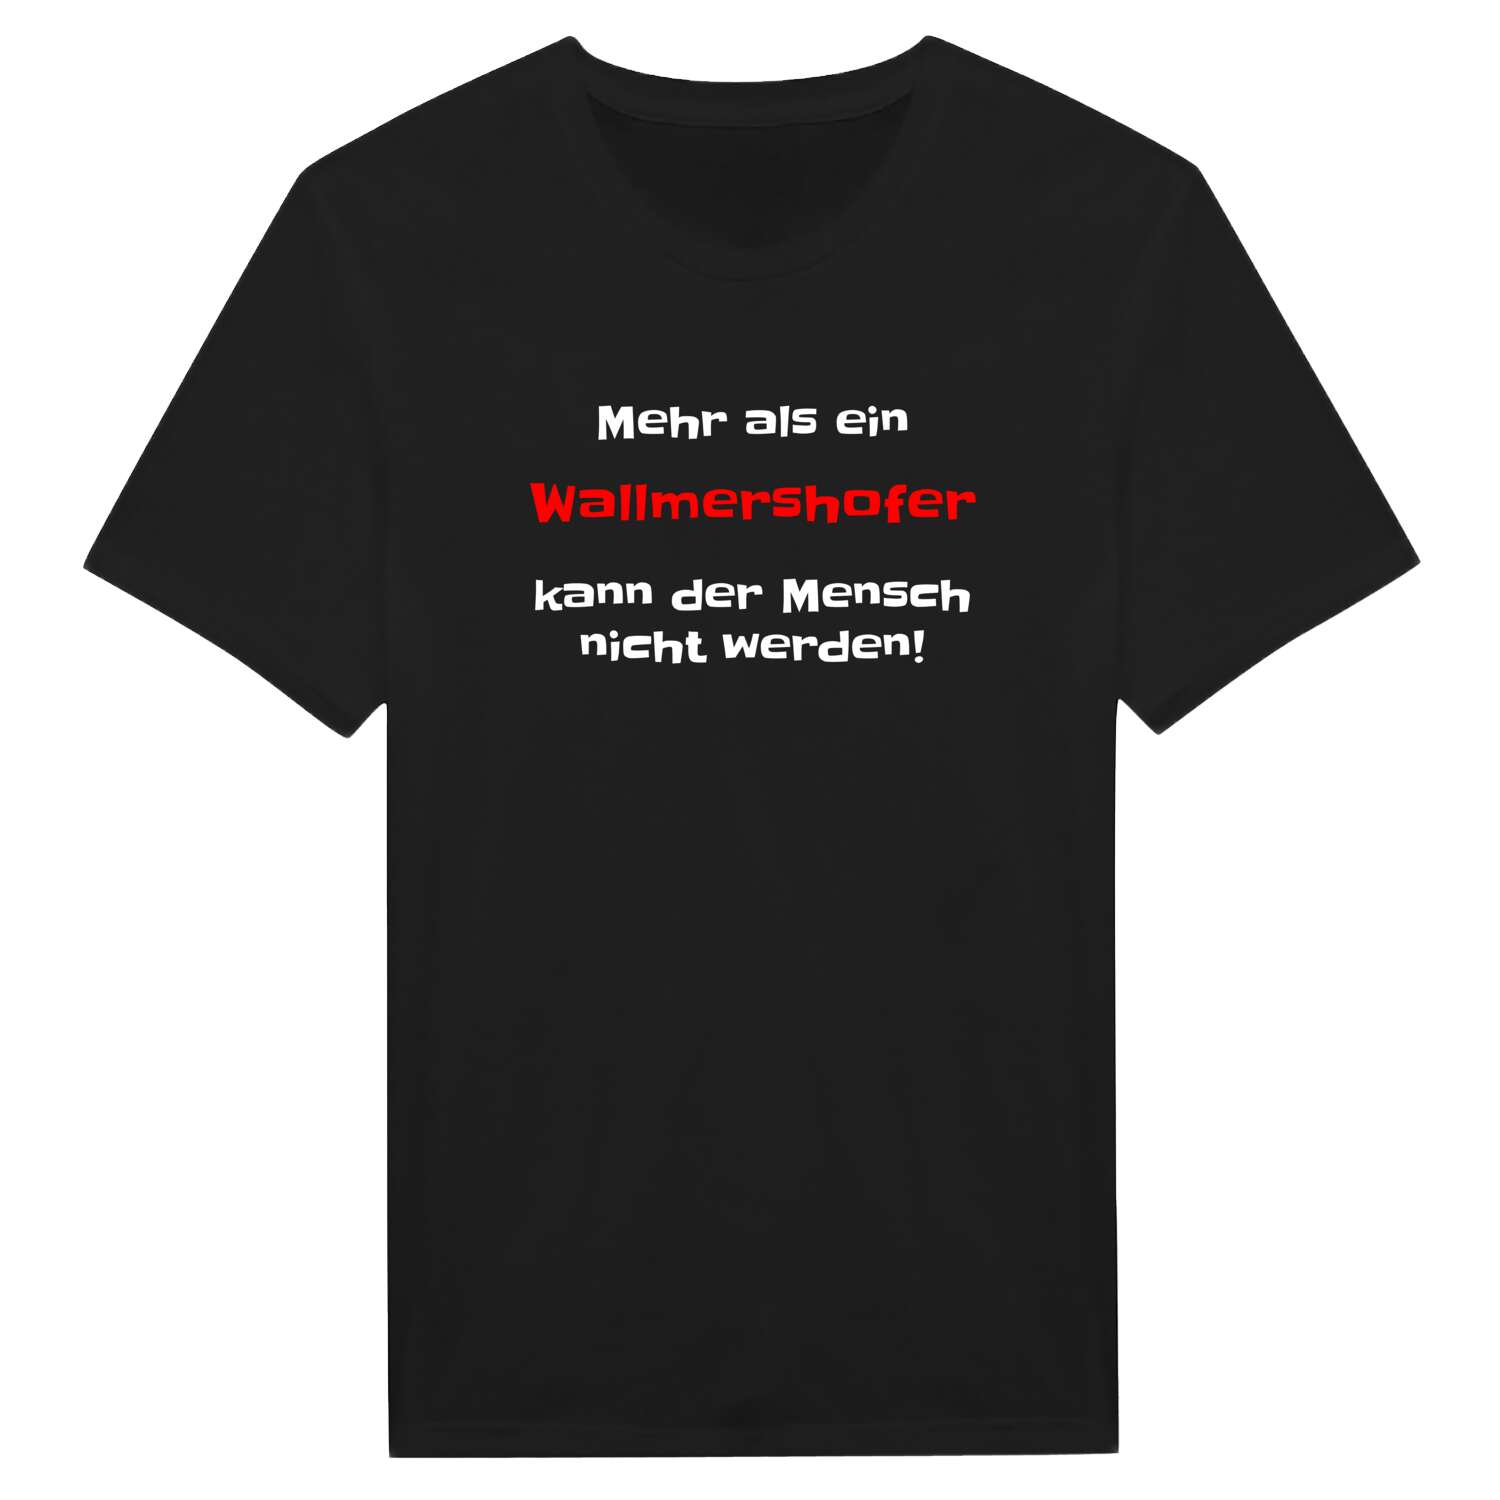 Wallmershof T-Shirt »Mehr als ein«